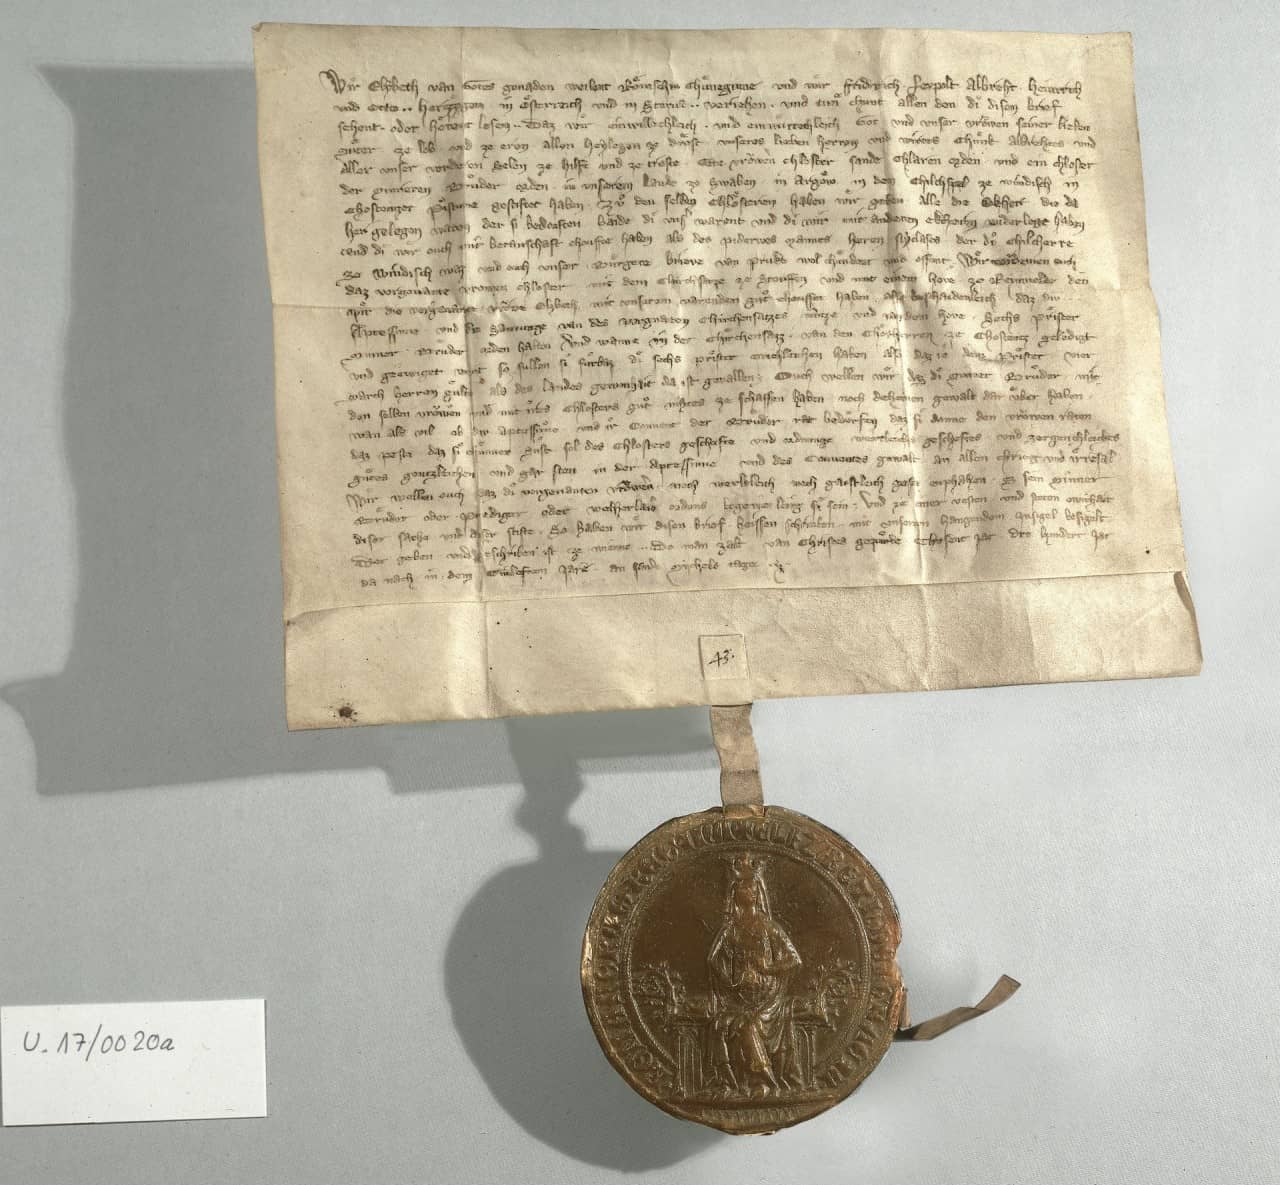 Pergament Urkunde mit dunkler Schrift und nach unten hängendem Siegel welches Königin auf Thron zeigt. Urkunde und Siegel werfen nach links einen Schatten.